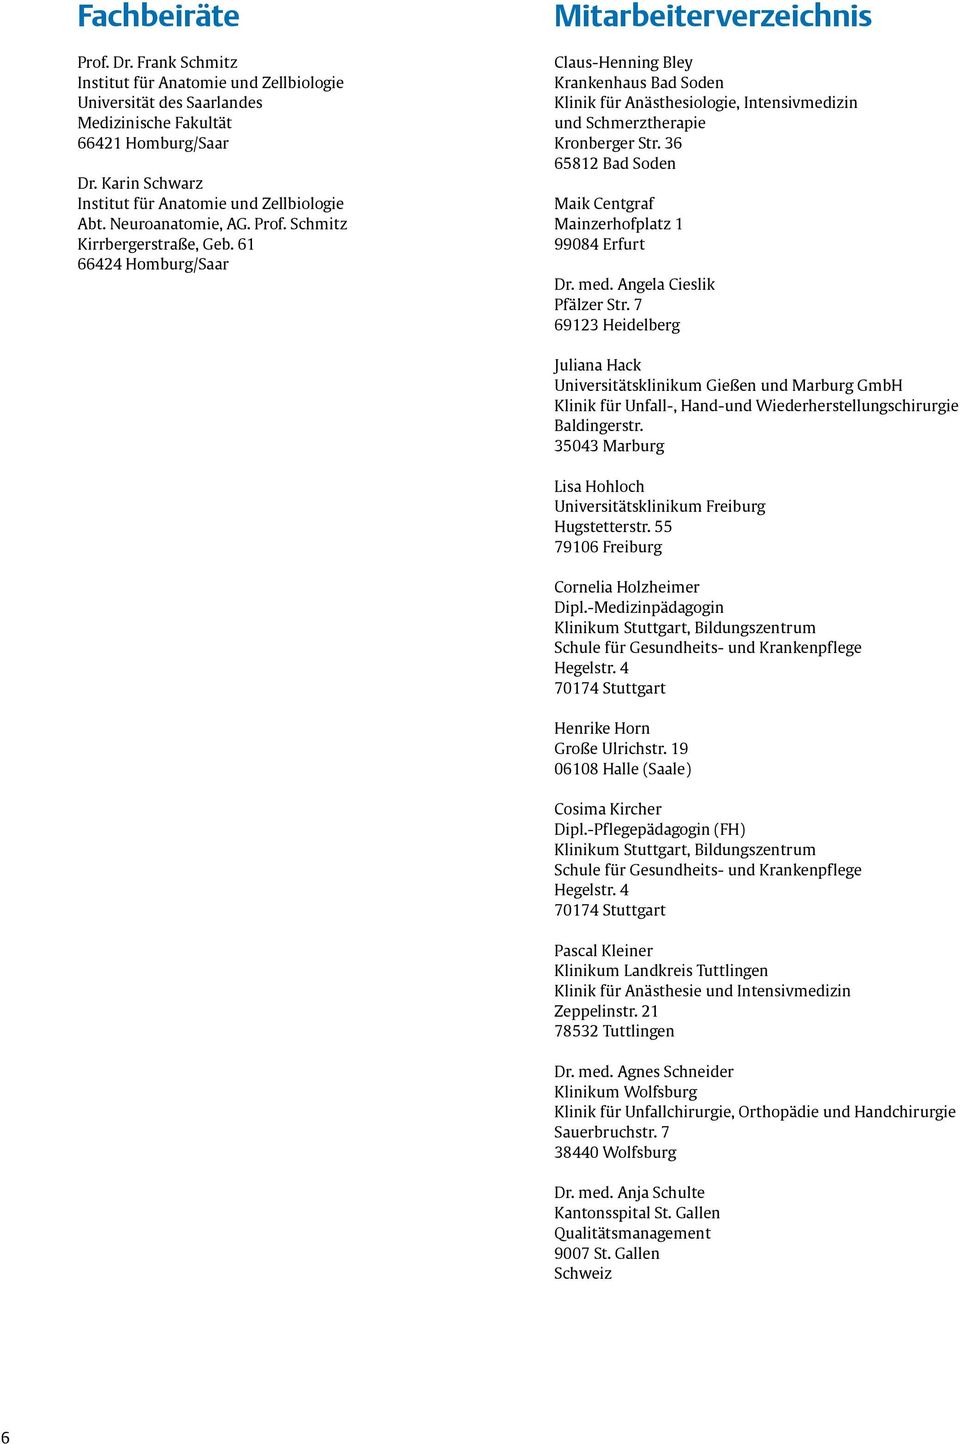 61 66424 Homburg/Saar Mitarbeiterverzeichnis Claus-Henning Bley Krankenhaus Bad Soden Klinik für Anästhesiologie, Intensivmedizin und Schmerztherapie Kronberger Str.